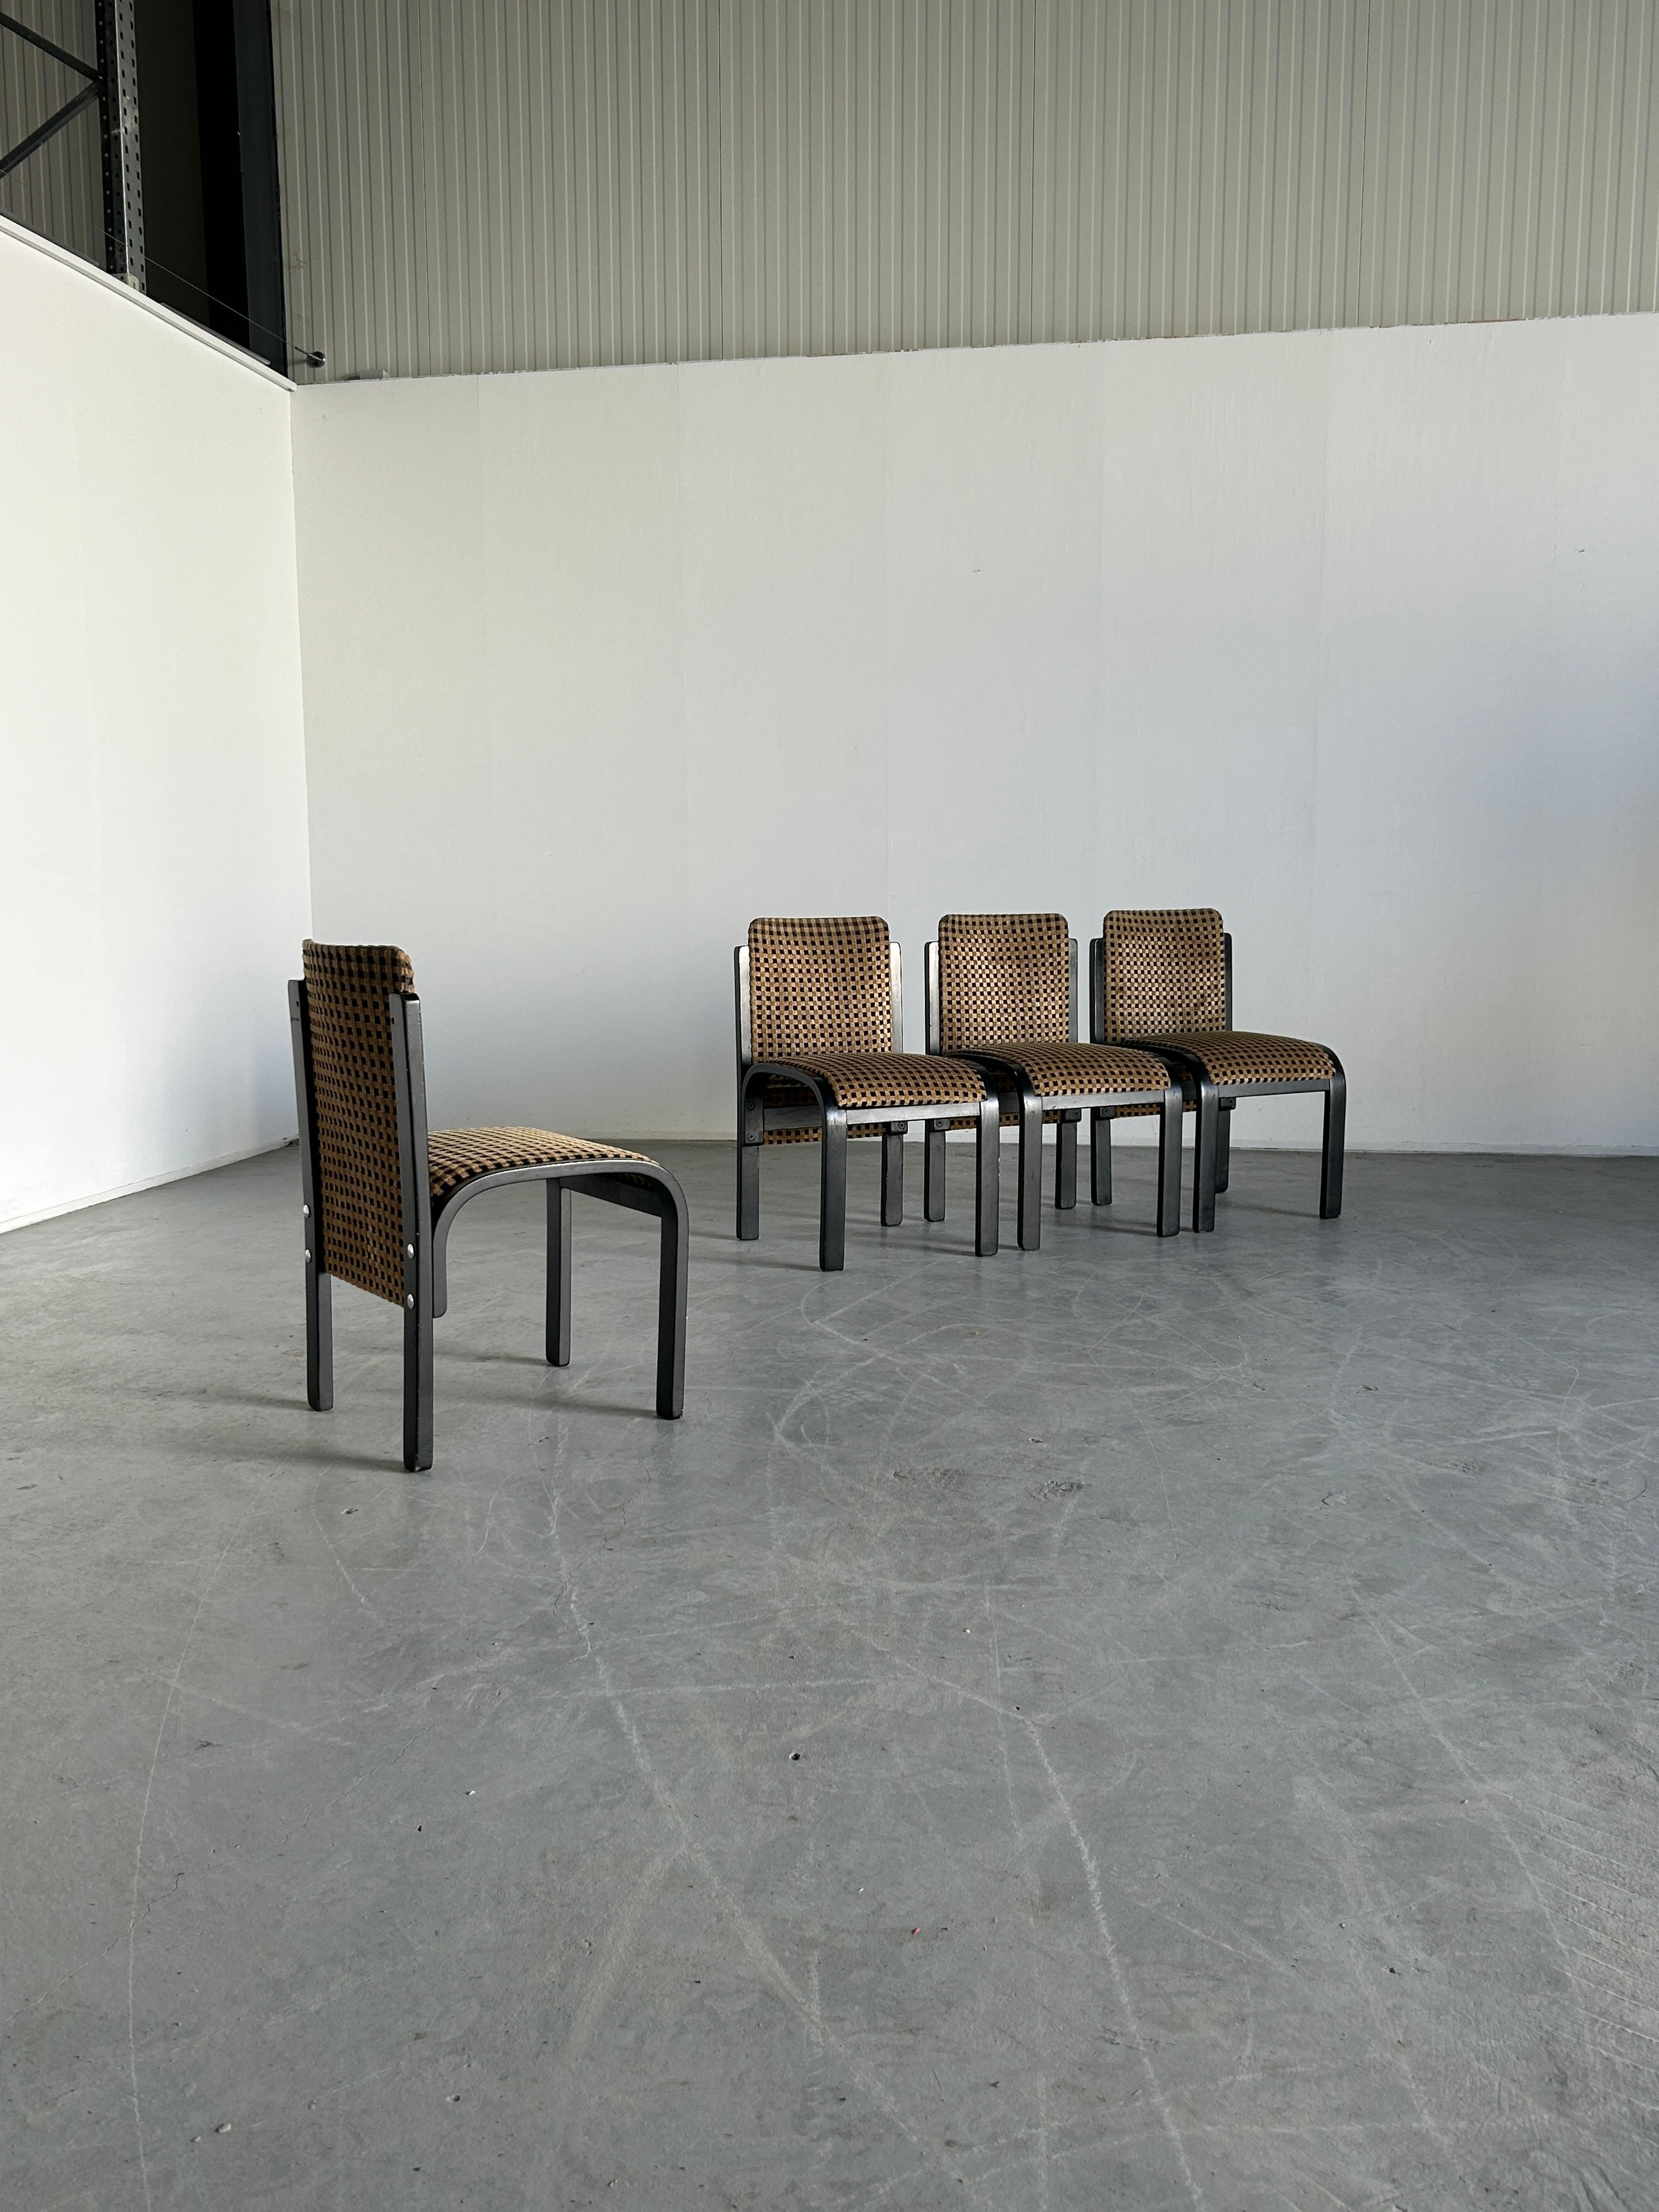 Ein Satz von vier atemberaubenden italienischen postmodernen skulpturalen Stühlen aus schwarz lackiertem Bugholz mit verchromten Beschlägen und original geometrisch gemustertem Samt.
Unbekannte italienische Produktion, Ende der 1970er oder Anfang